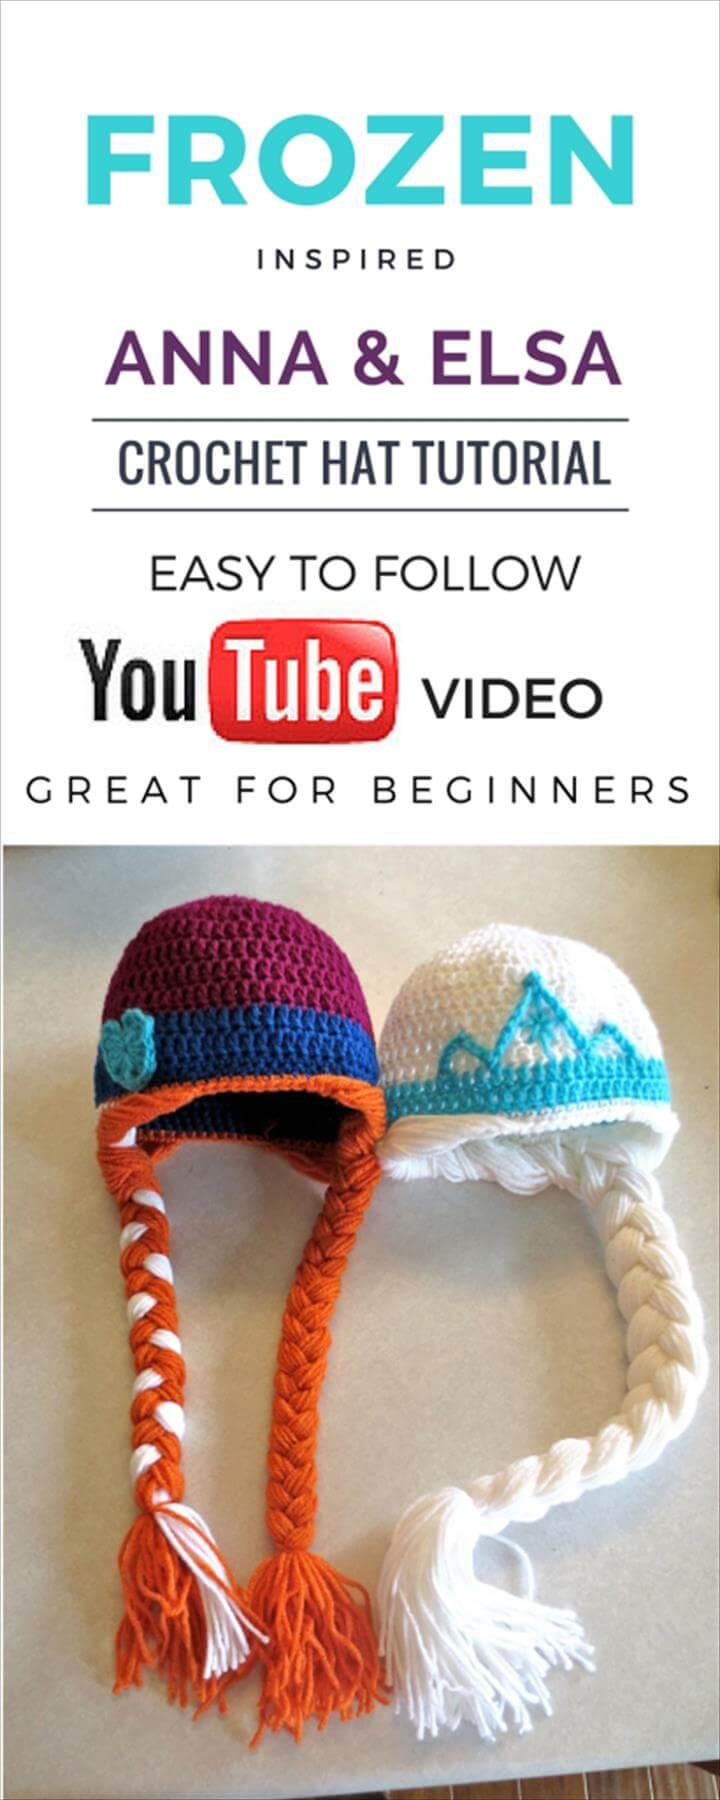 crochet baby hat video tutorial